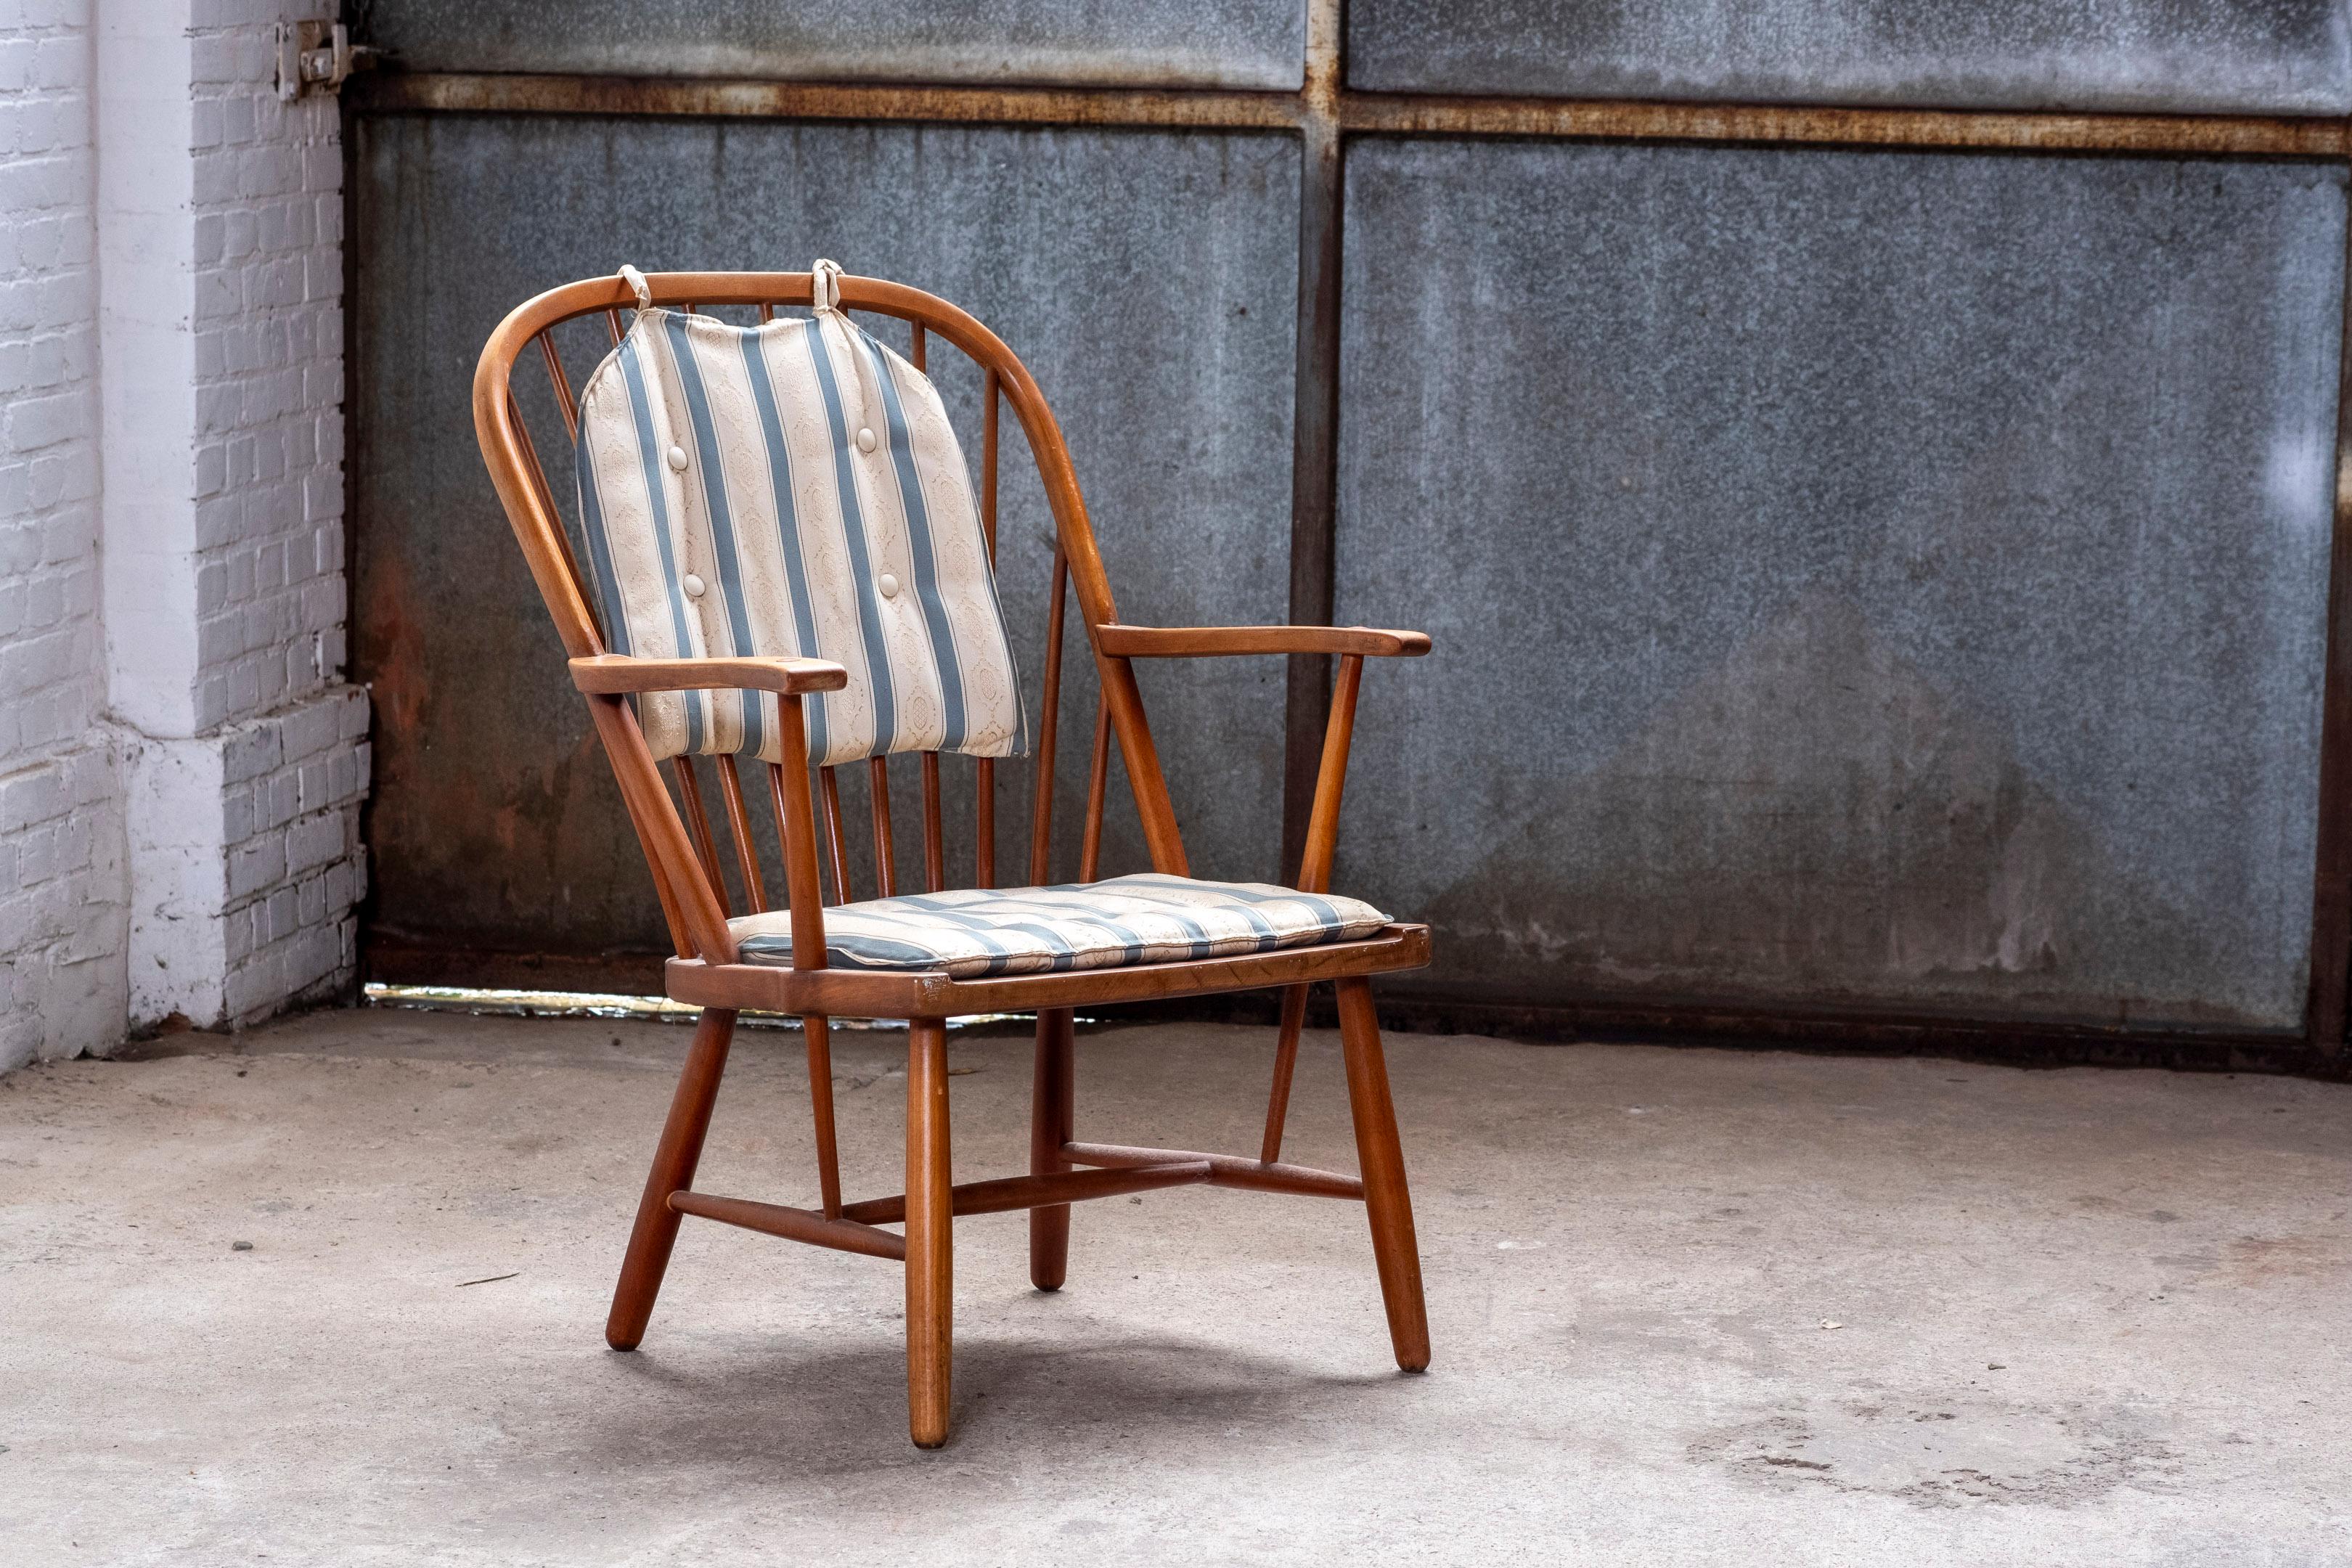 Fauteuil Windsor original et précoce de Fritz Hansen fabriqué en 1940 au Danemark.
La chaise présente une combinaison intéressante de la construction et de la menuiserie d'origine de la chaise Windsor. La chaise n'a pas été restaurée et présente une